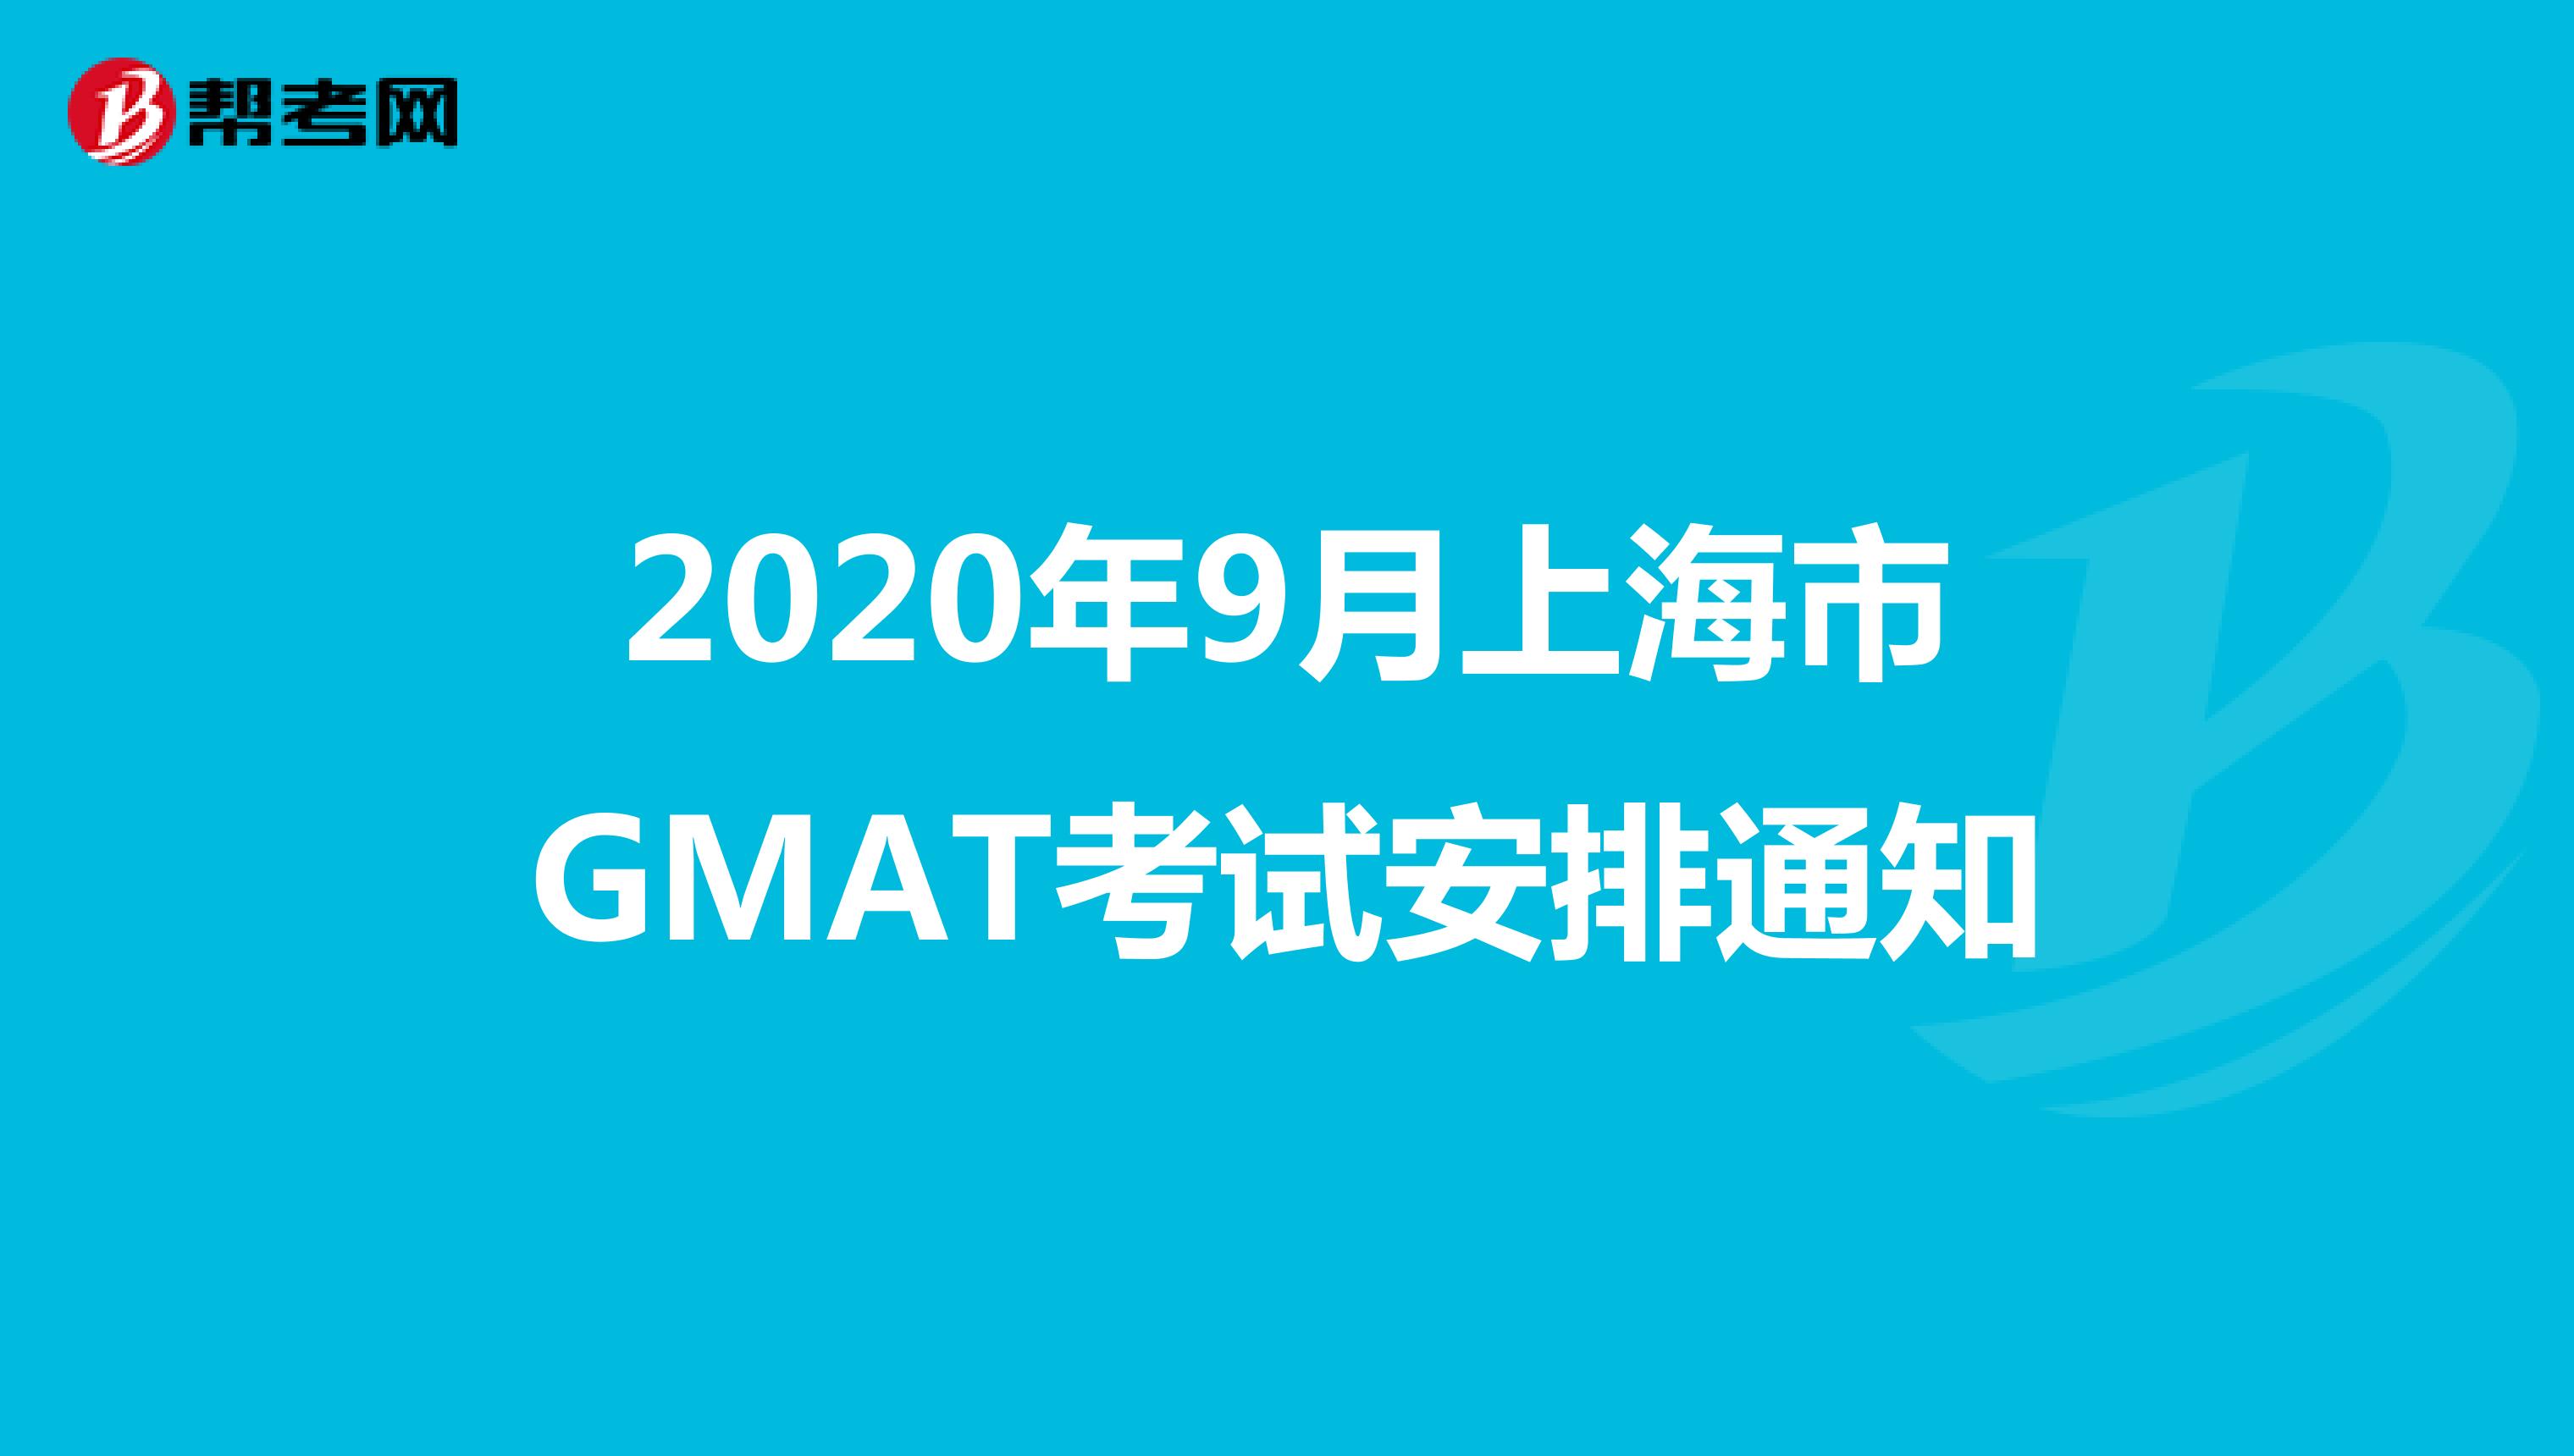 2020年9月上海市GMAT考试安排通知